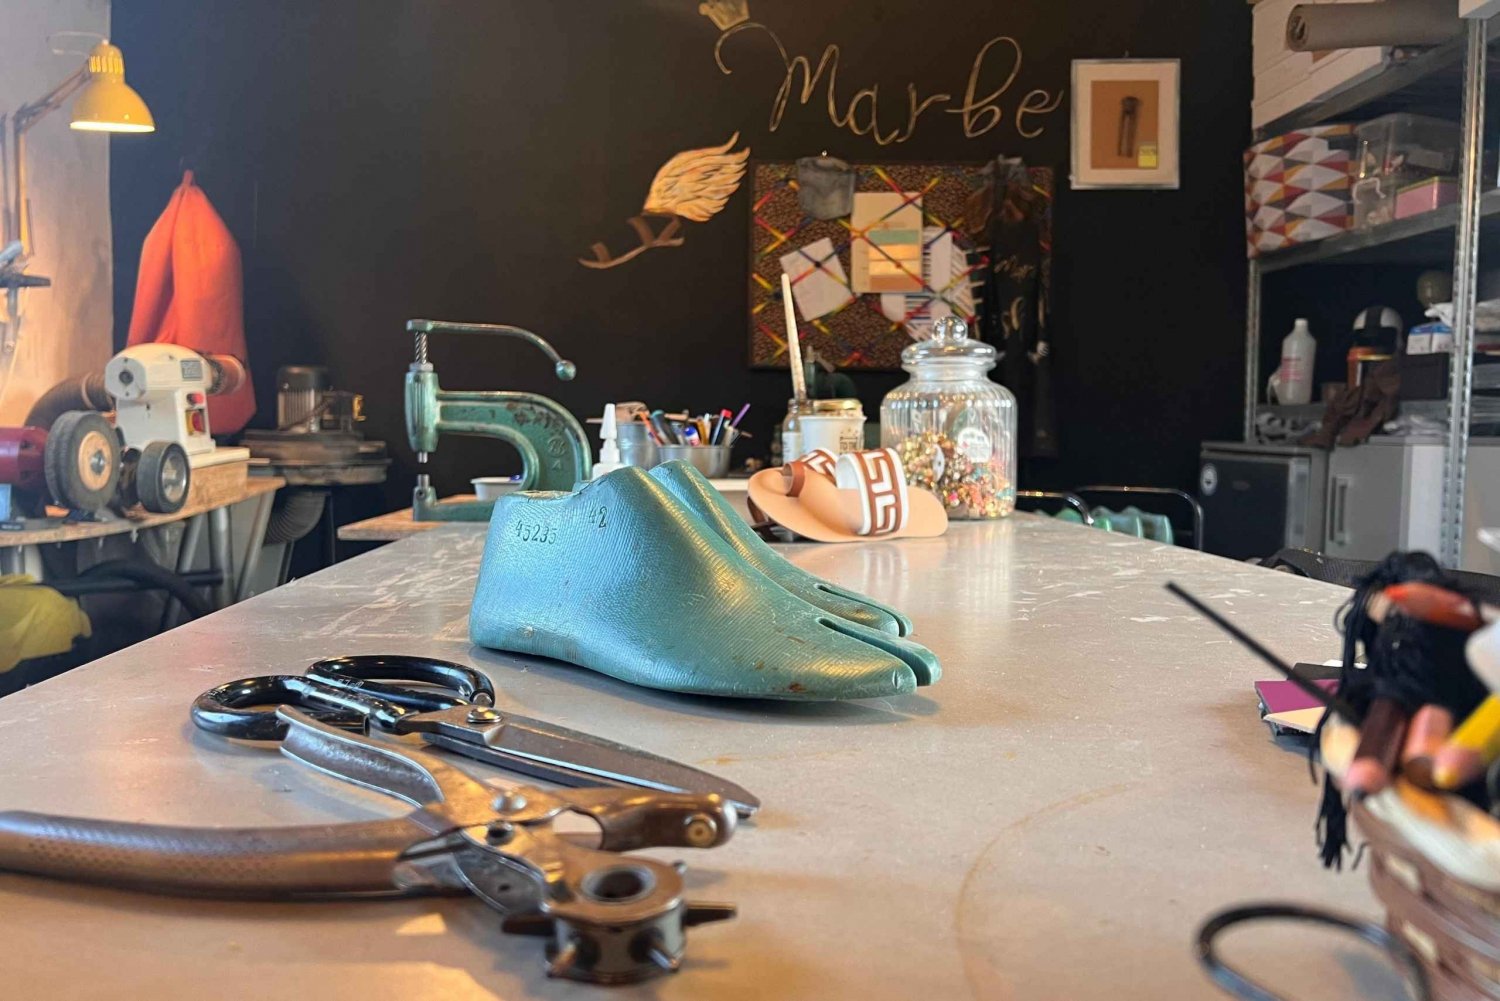 Athen: Lav dine egne lædersandaler Workshop